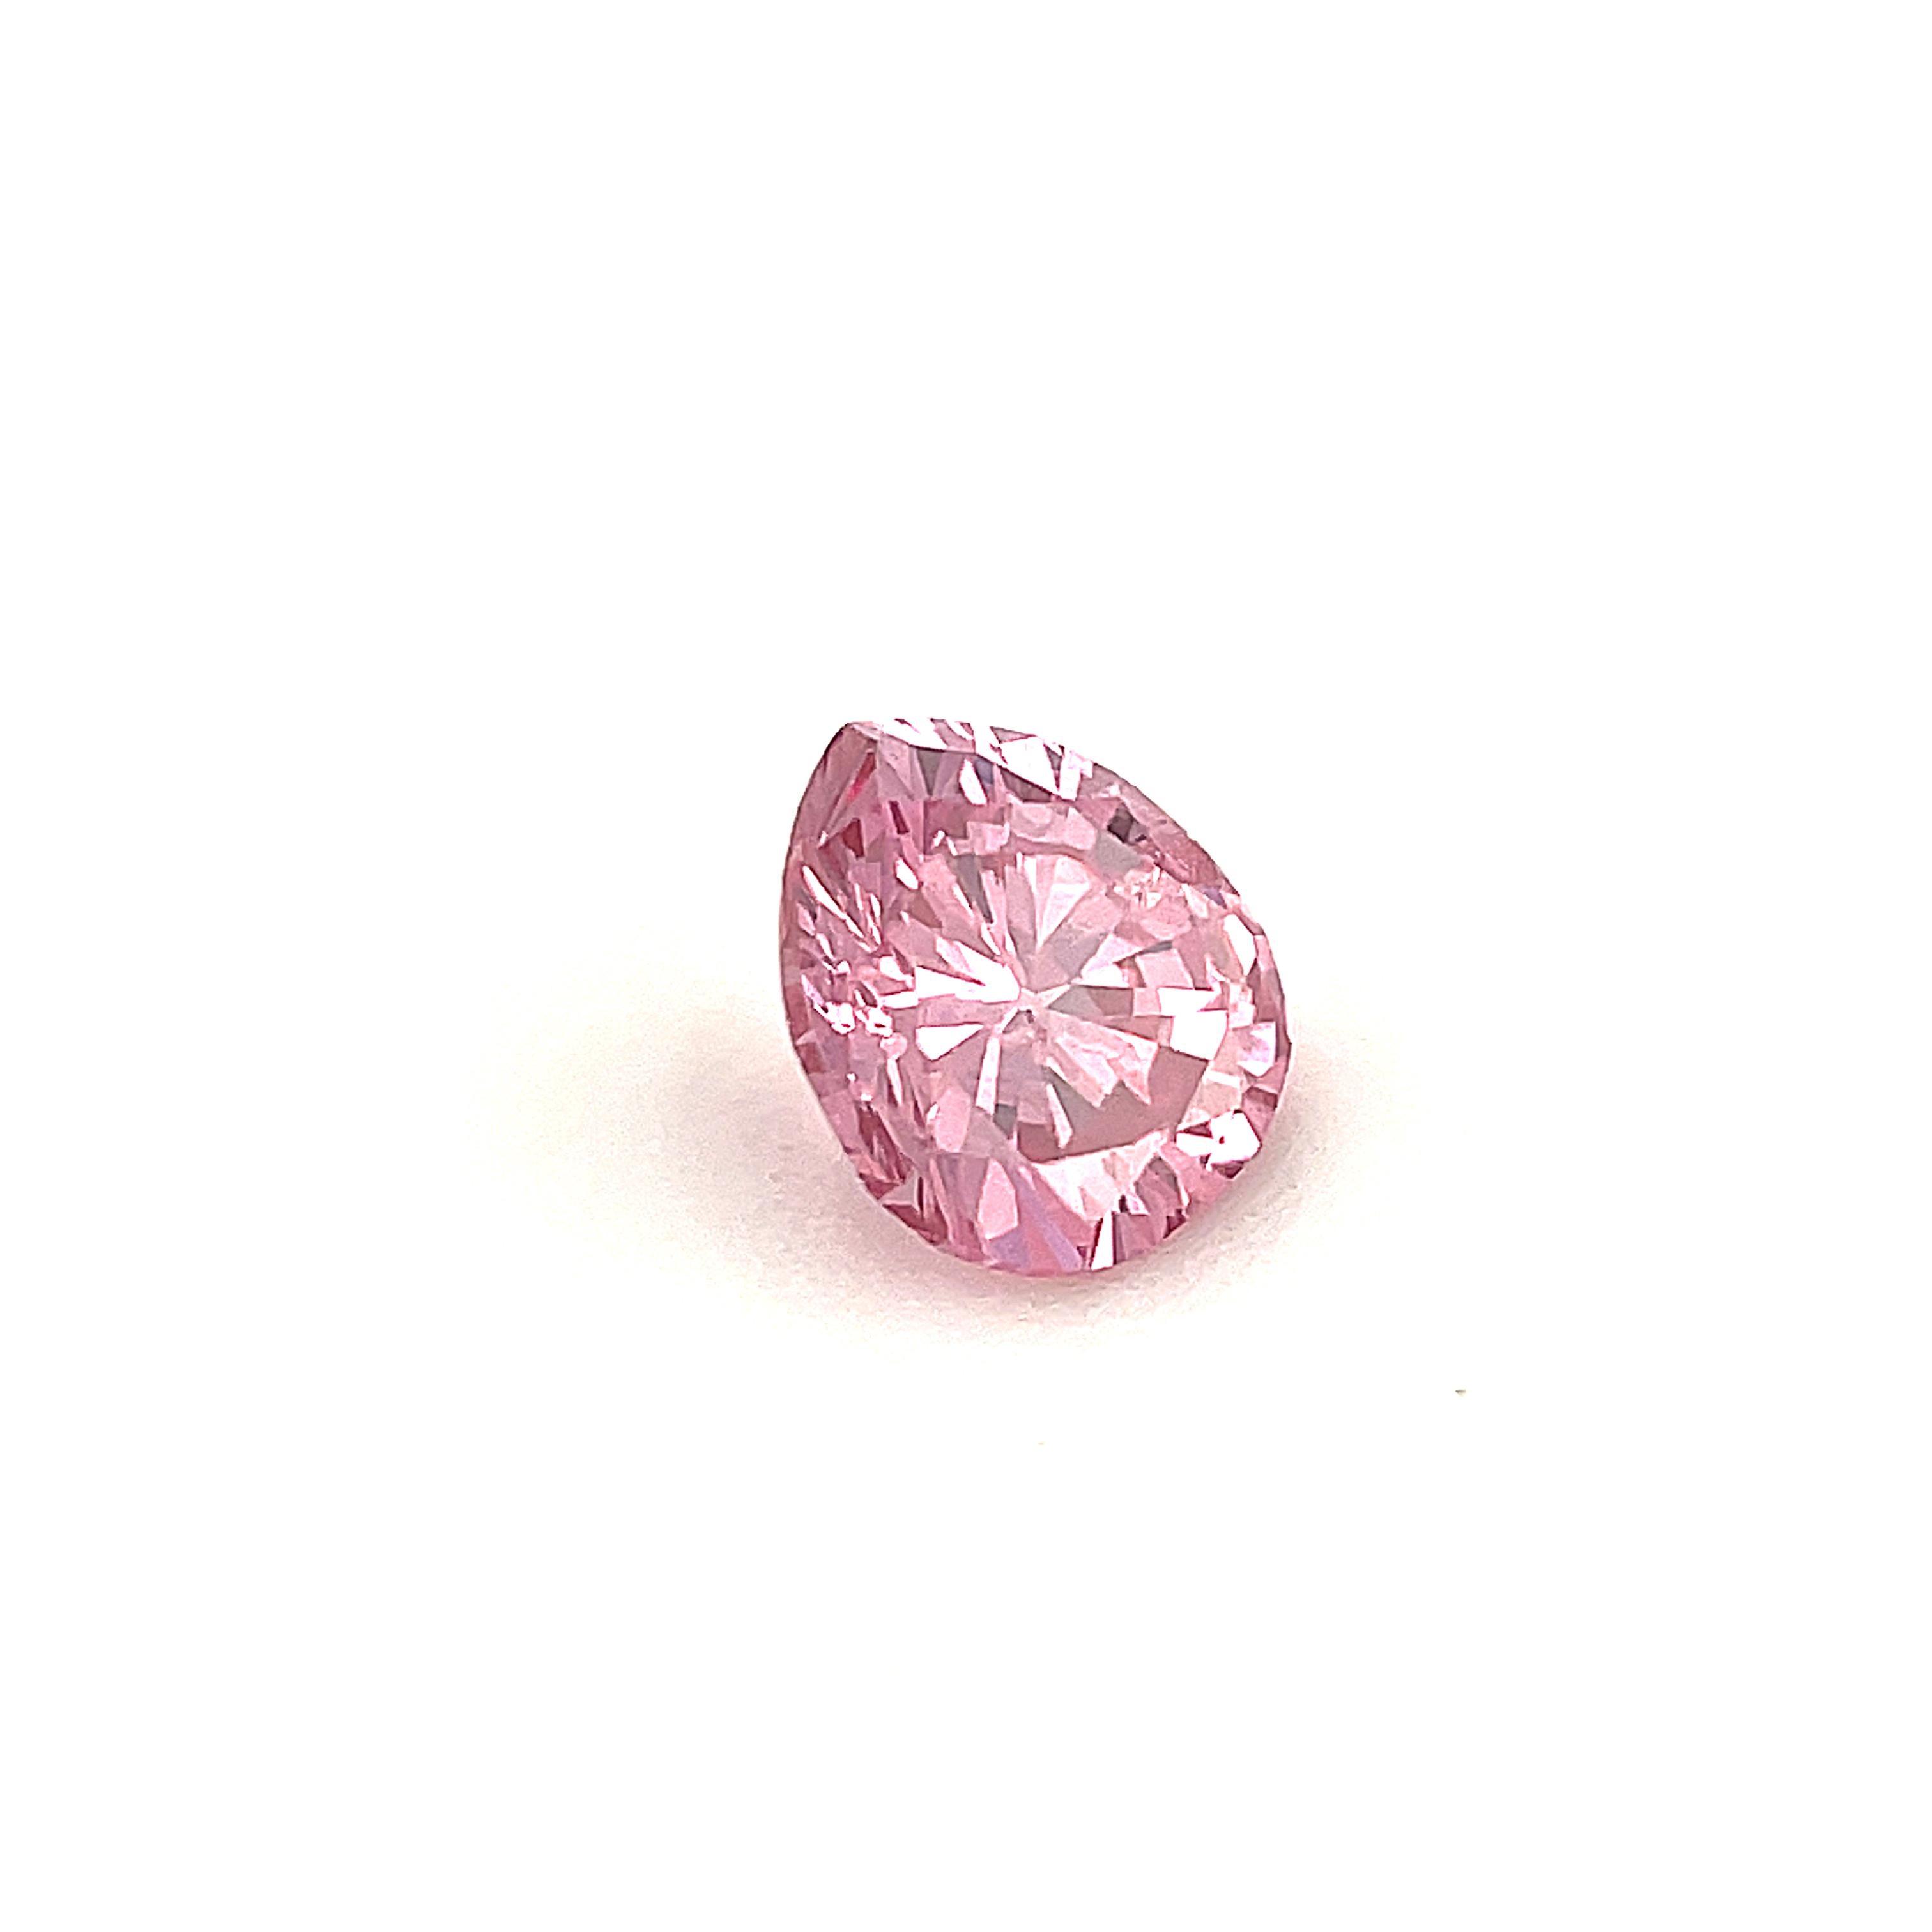 purplish pink diamond